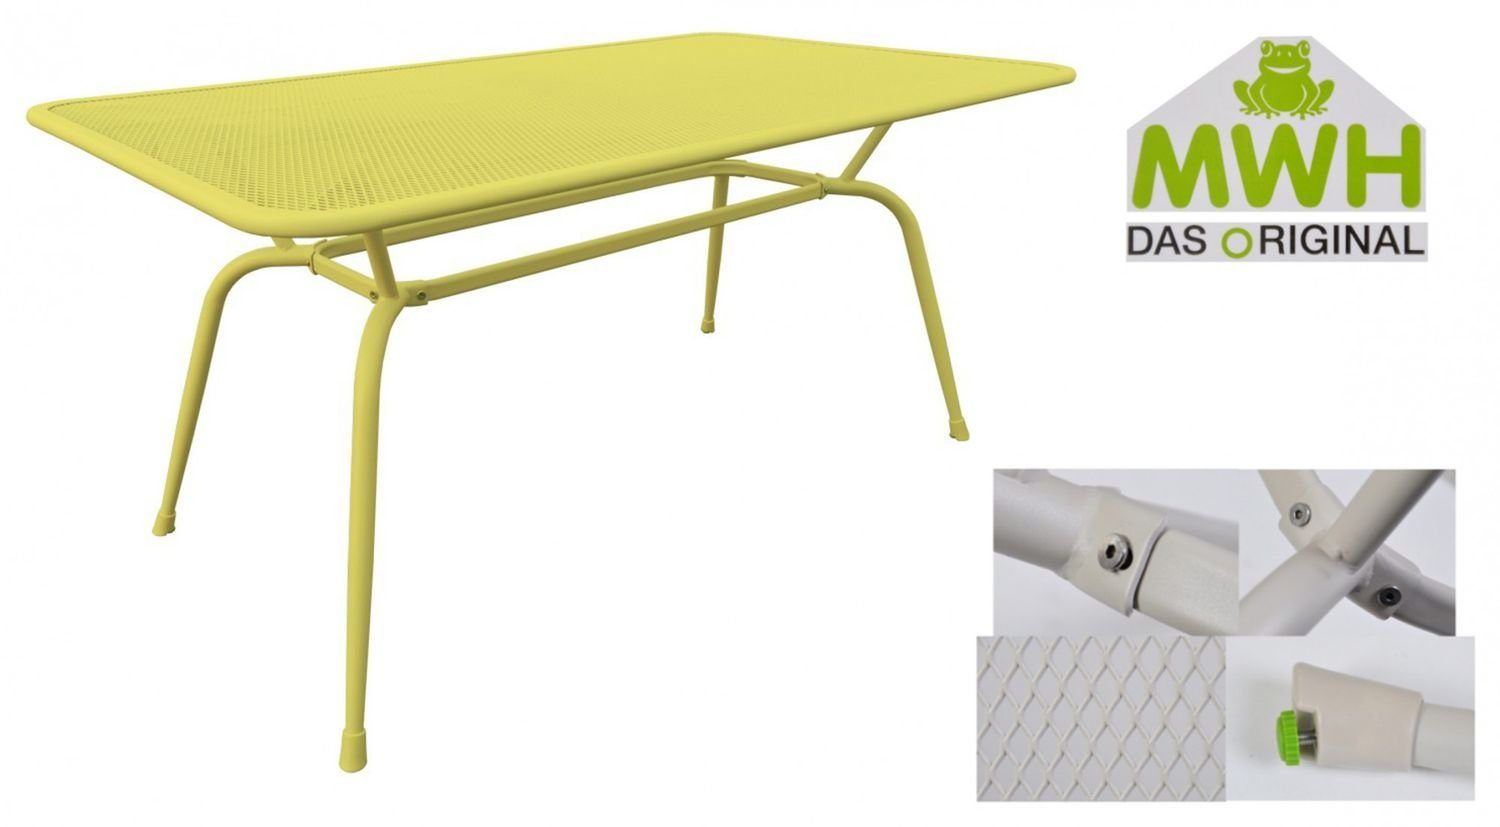 MWH Tisch MWH-Tisch Gartentisch Streckmetalltisch Gartentisch 160x90x74cm gelb Conello